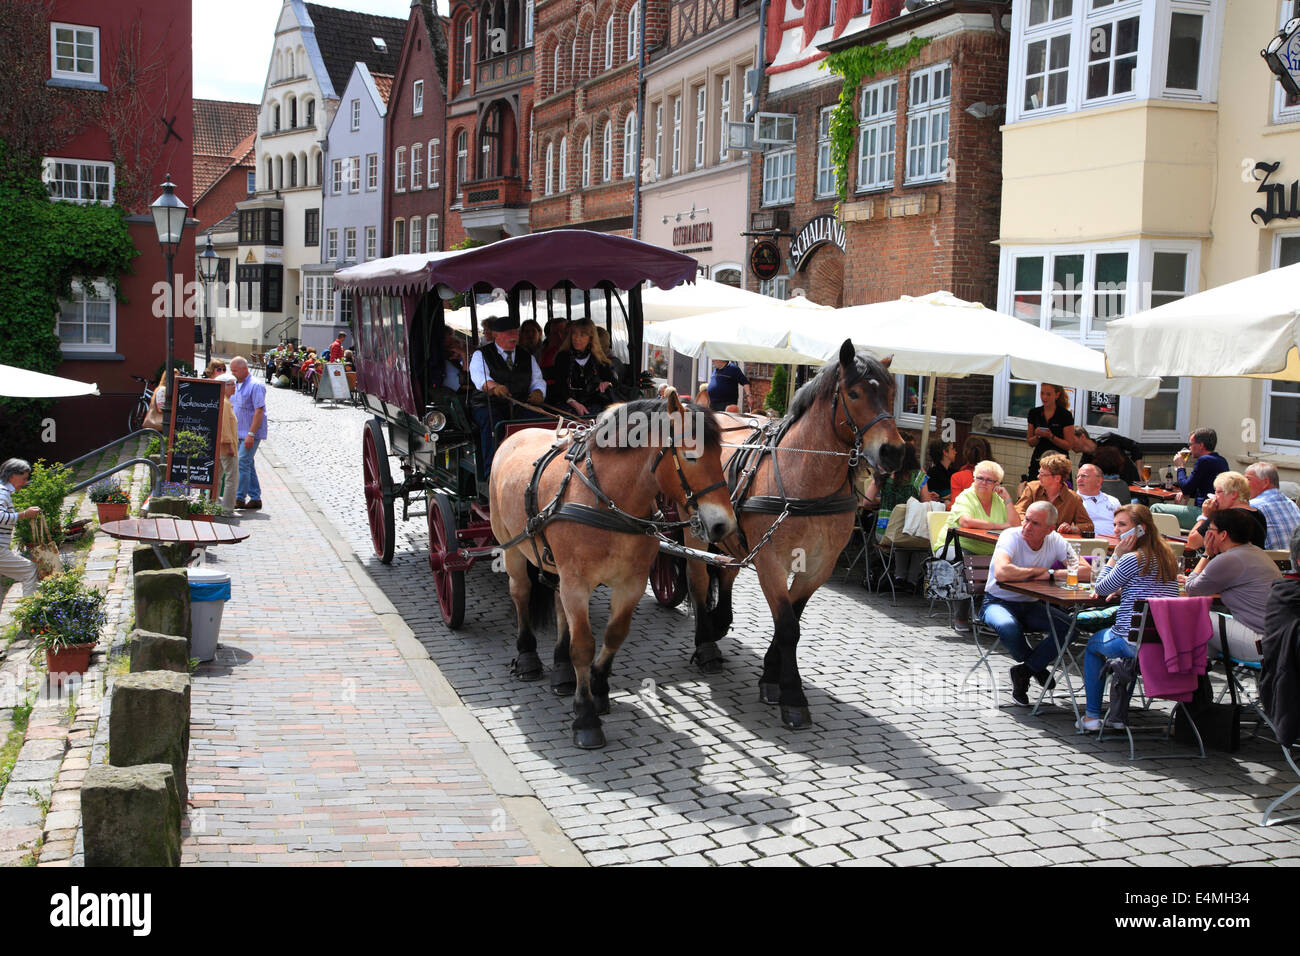 Stadtrundfahrt mit der Kutsche am Stintmarkt, Lüneburg, Lüneburg, Niedersachsen, Deutschland, Europa Stockfoto